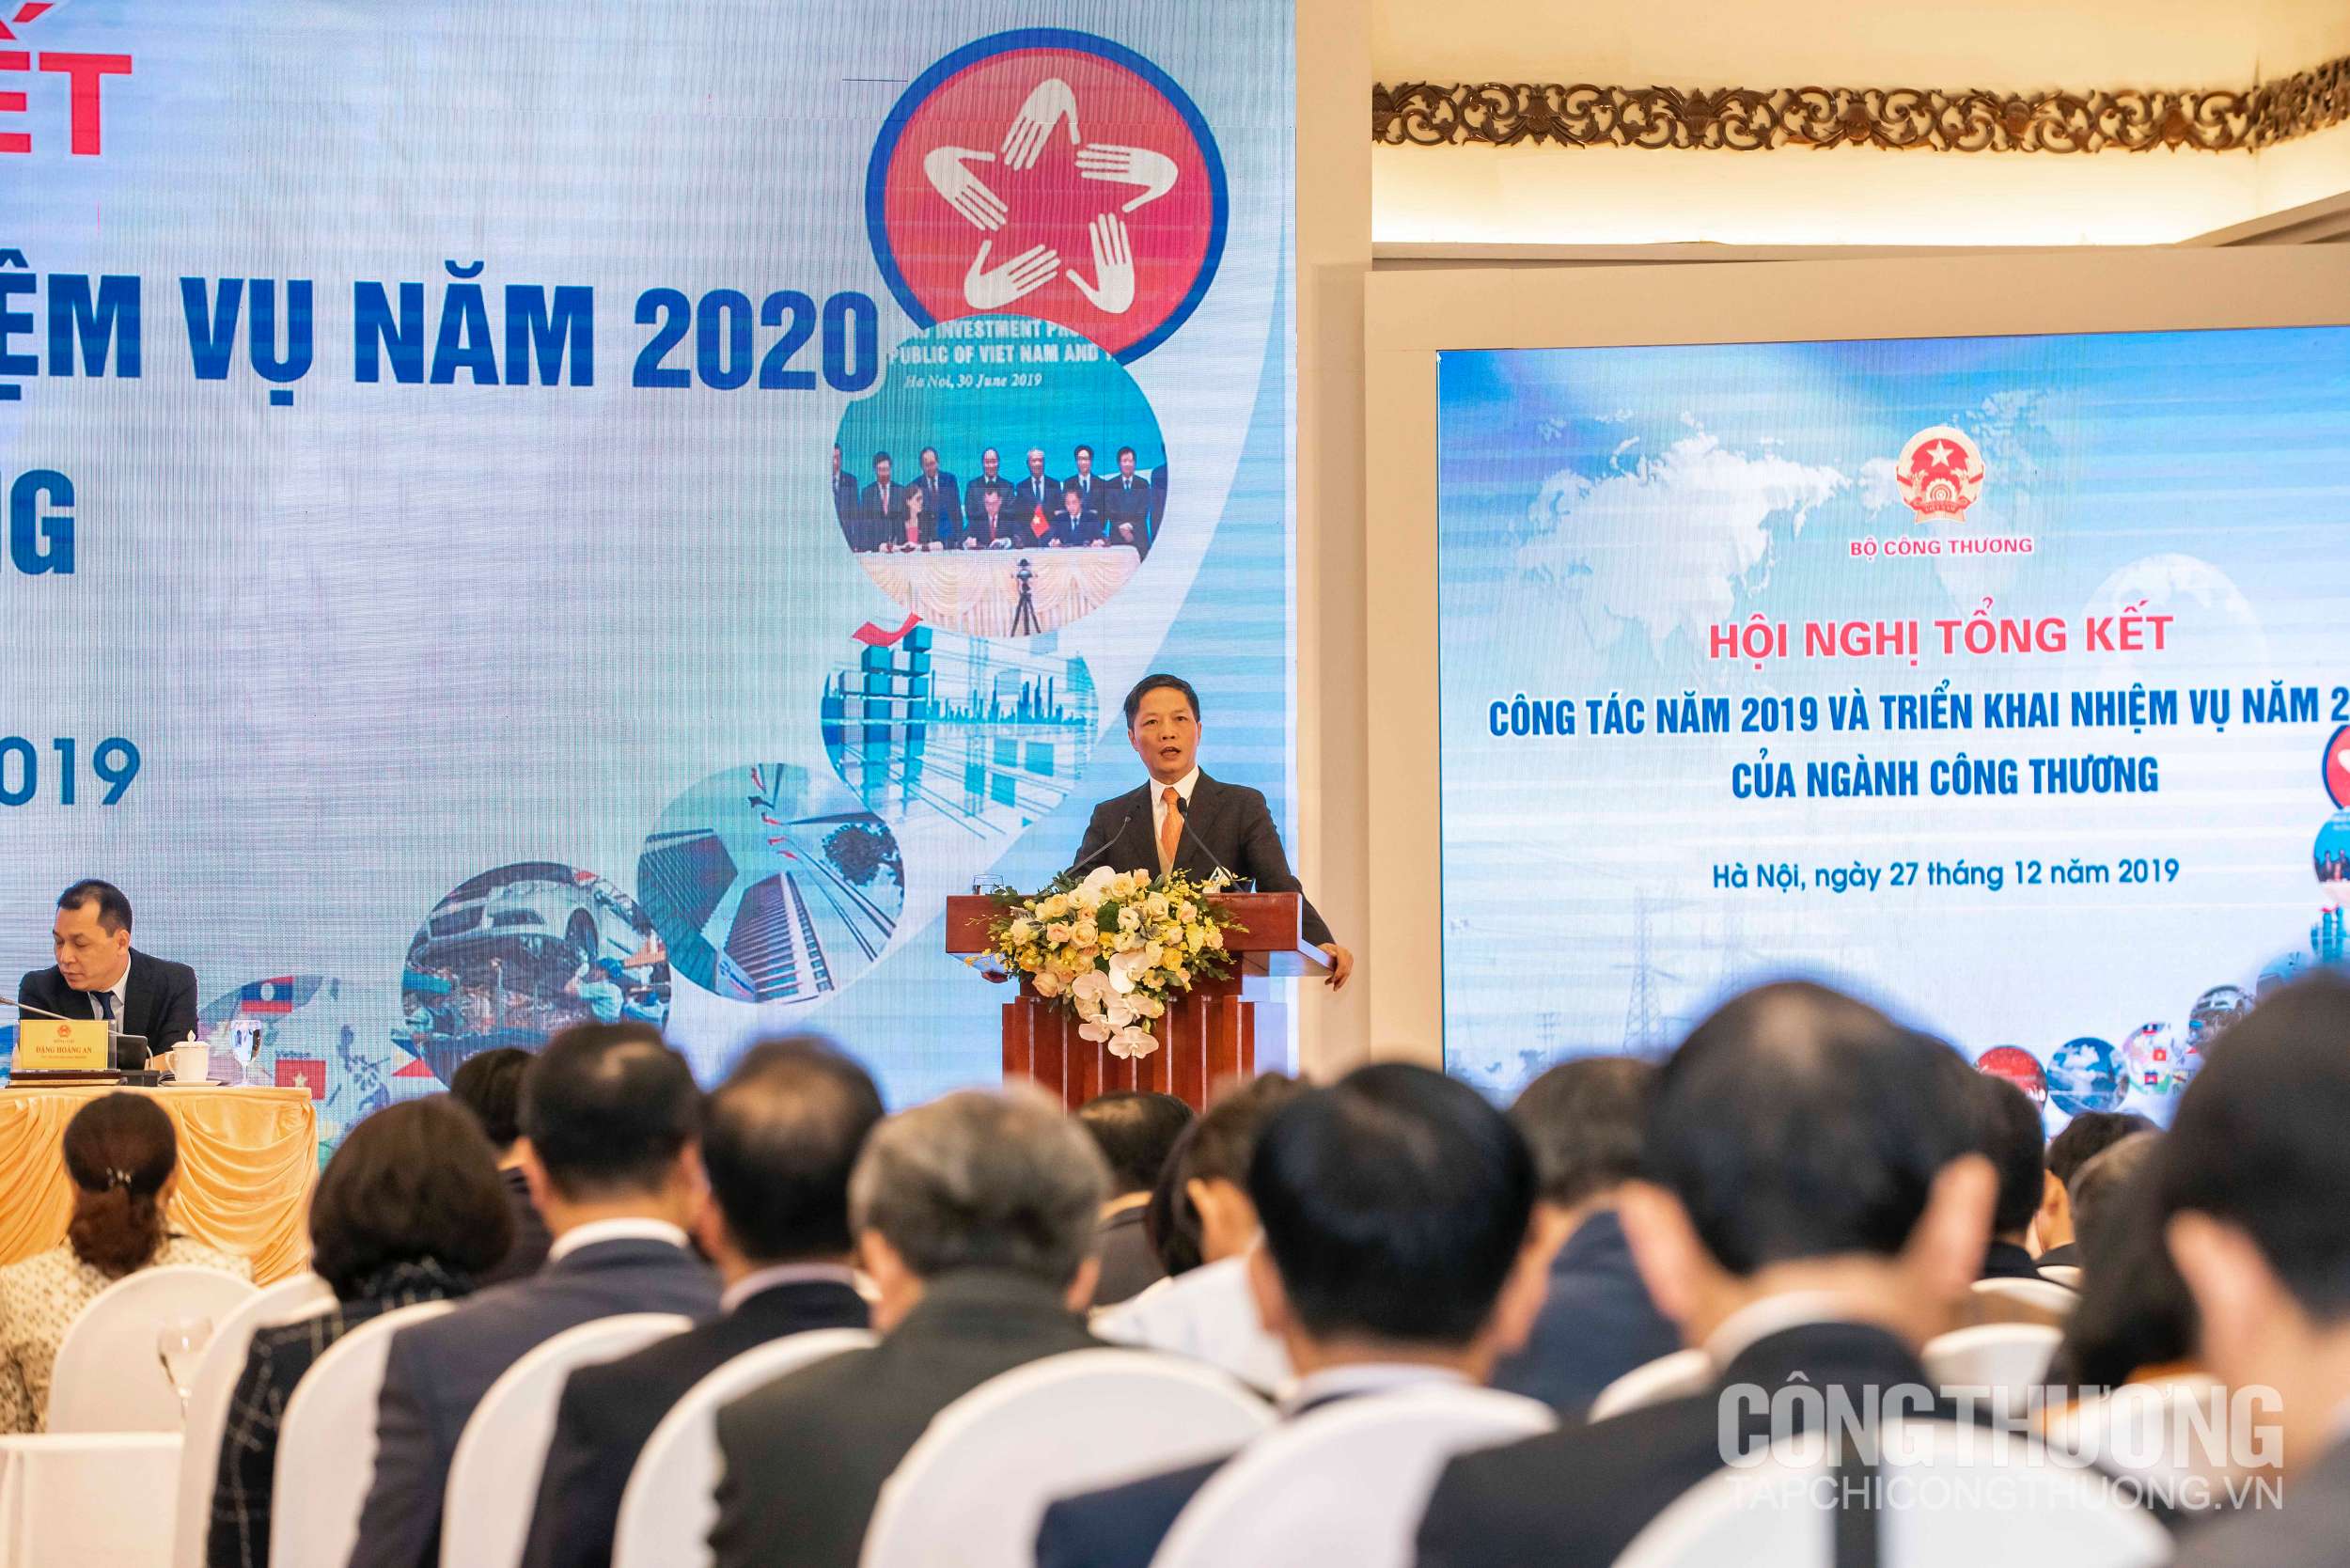 Bộ trưởng Bộ Công Thương cam kết tiếp tục nỗ lực hơn trong năm 2020